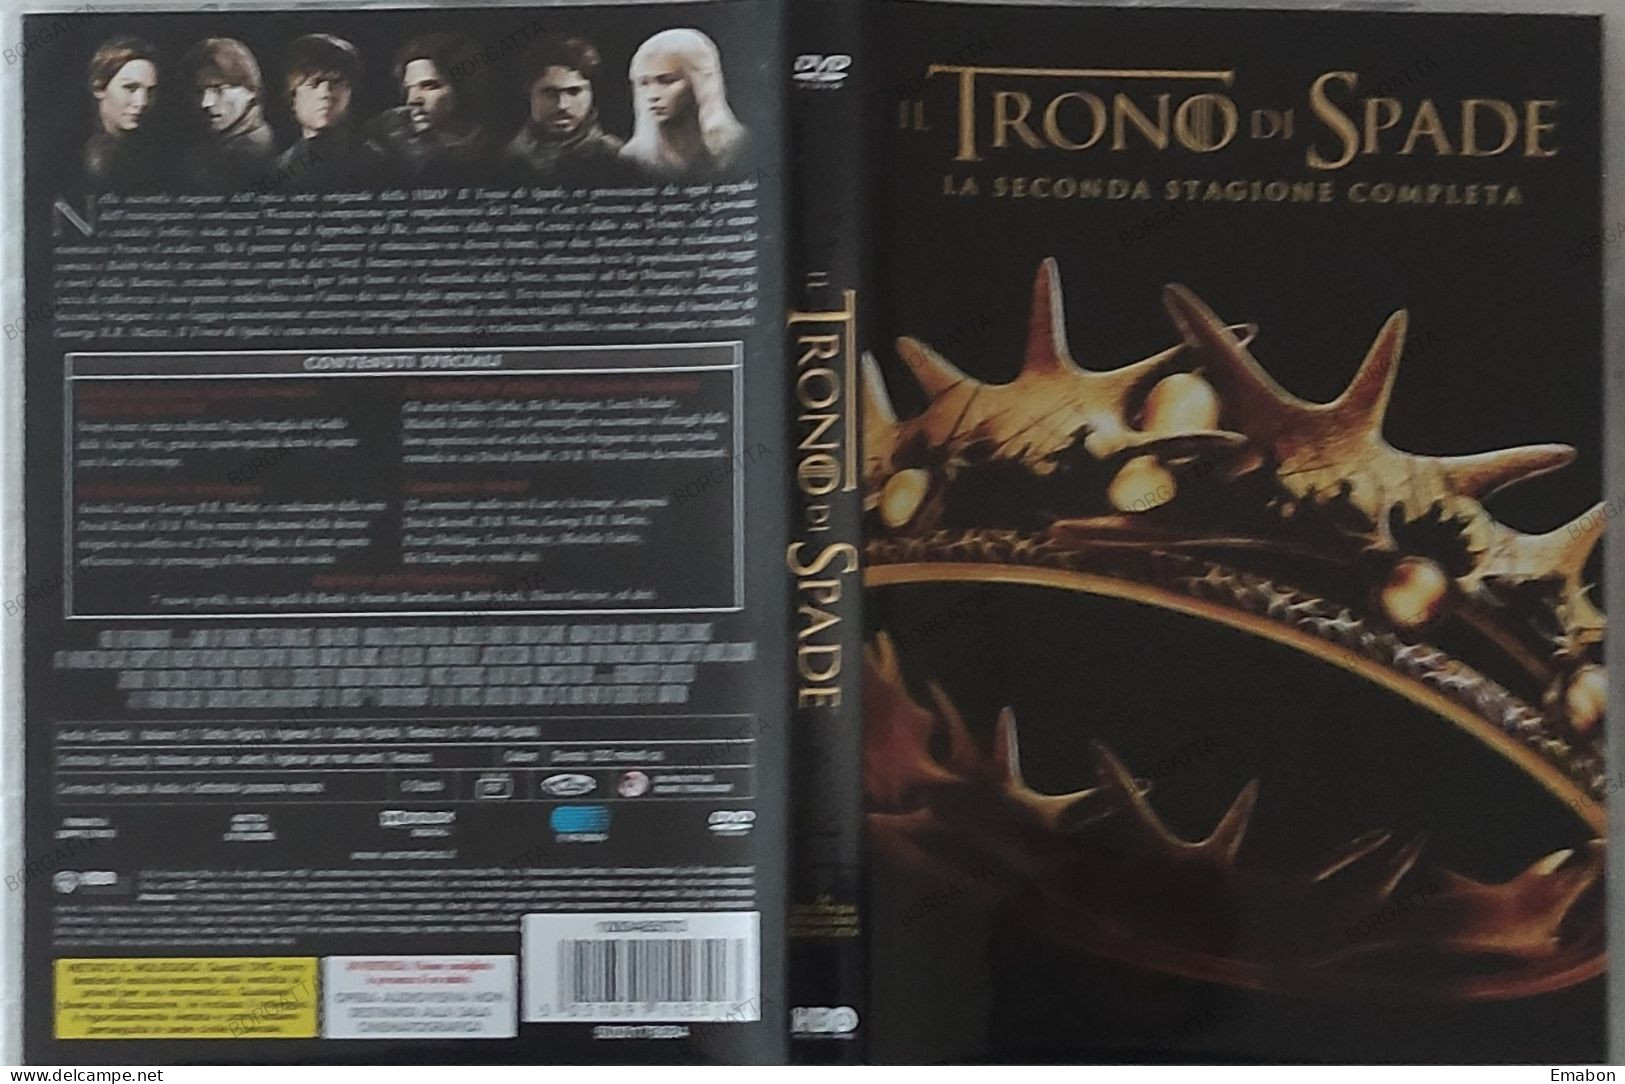 BORGATTA - FANTASTICO - BOX 5 Dvd " IL TRONO DI SPADE SECONDA STAGIONE "-  - HBO 2014 -  USATO In Buono Stato - Fantastici